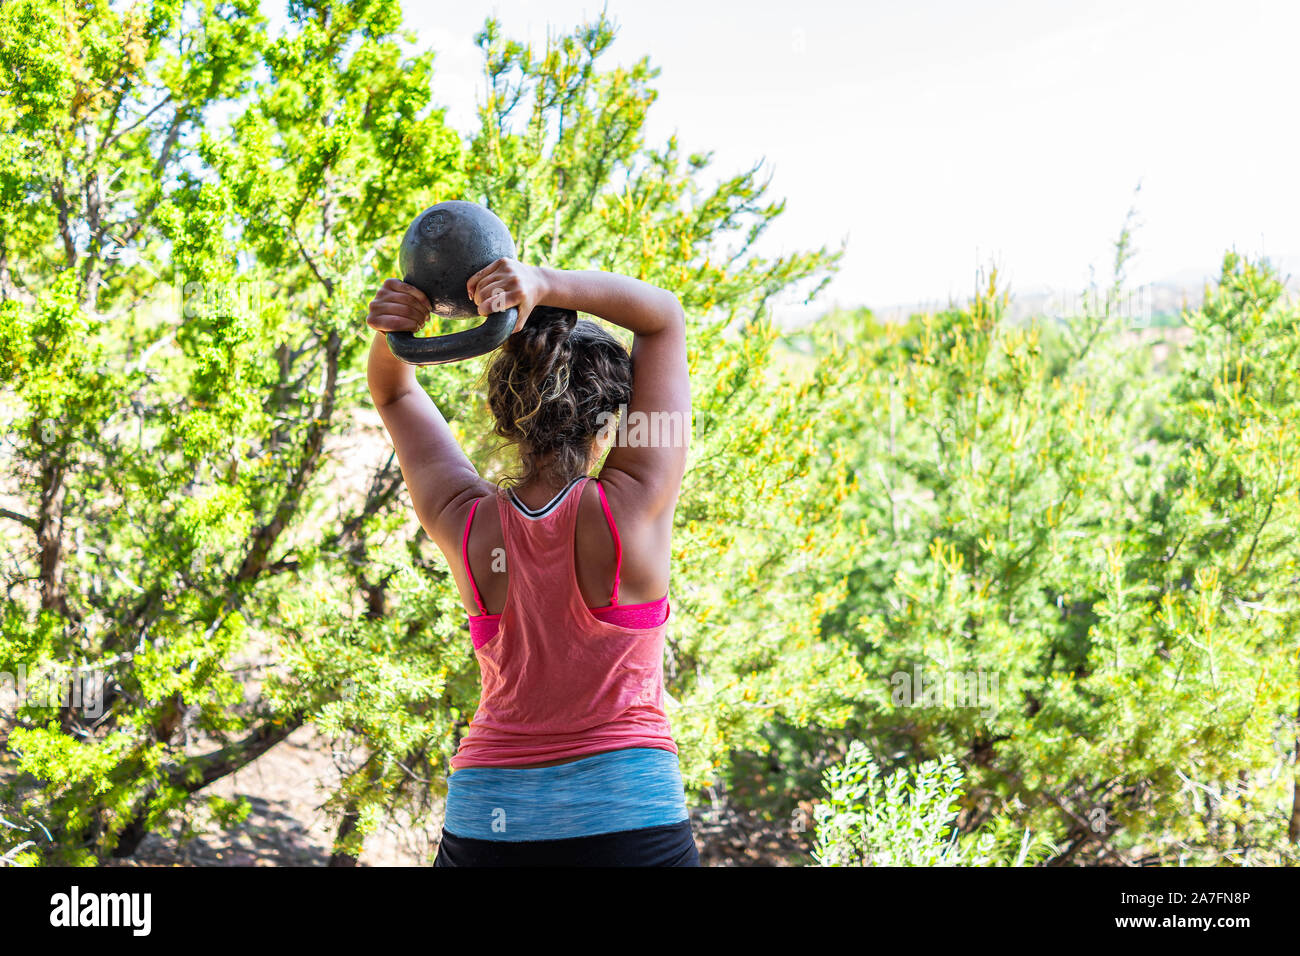 Zurück junger passende Frau mit schweren kettlebell tun Trizeps übung und Muskeln im Freien außerhalb Park holding Gewichtheben Stockfoto